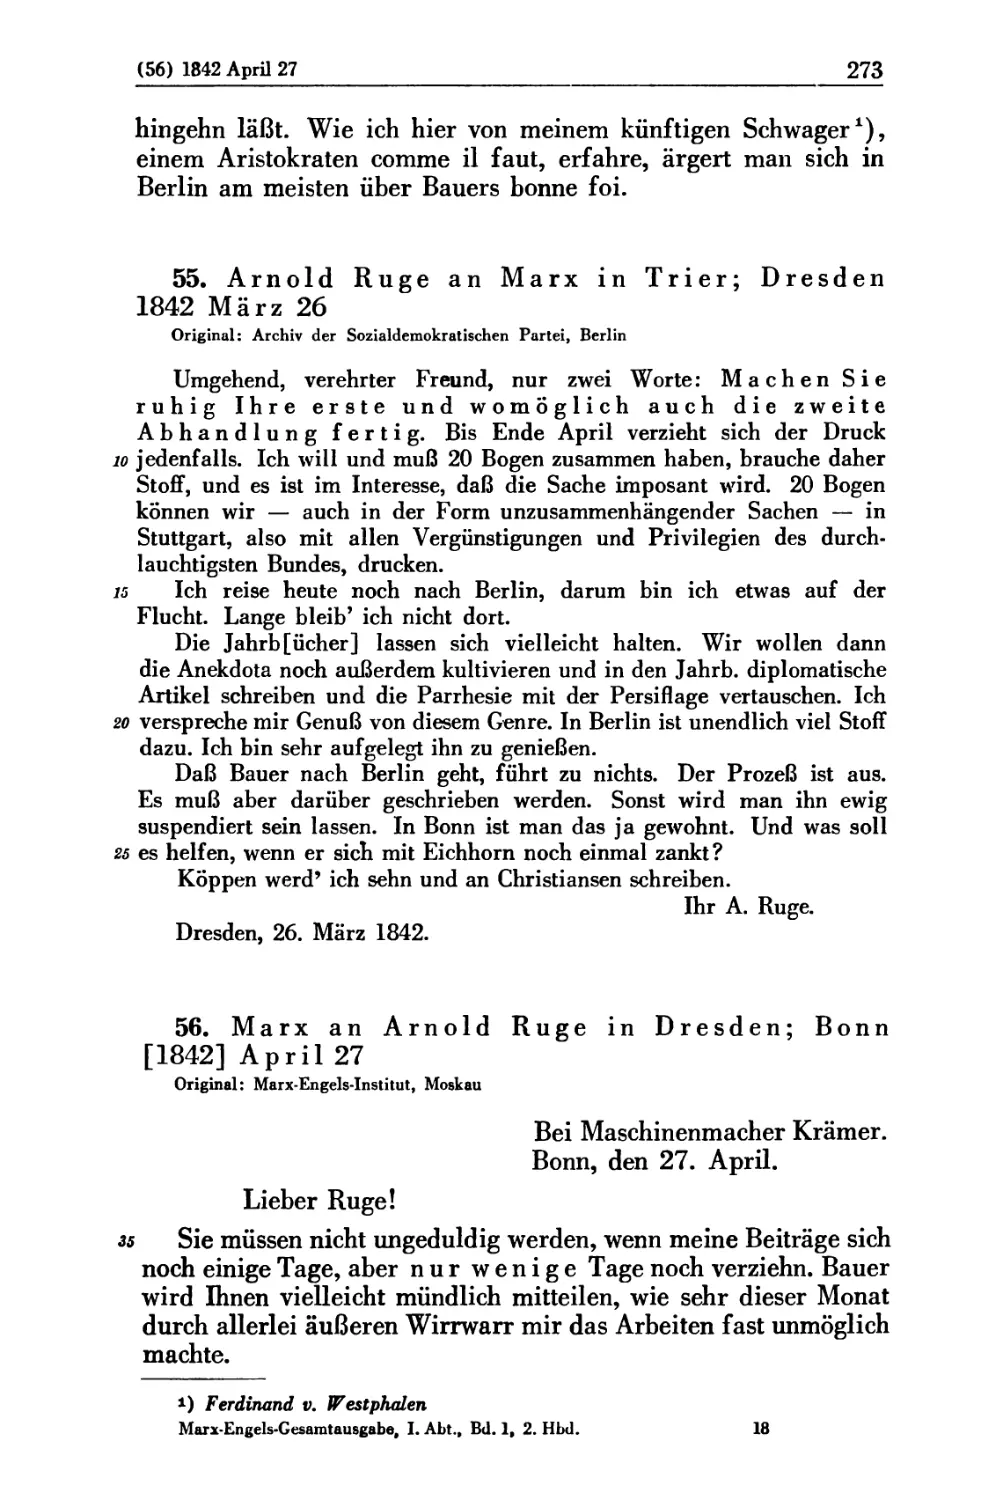 55. Arnold Ruge an Marx in Trier; Dresden 1842 März 26
56. Marx an Arnold Ruge in Dresden; Bonn [1842] April 27